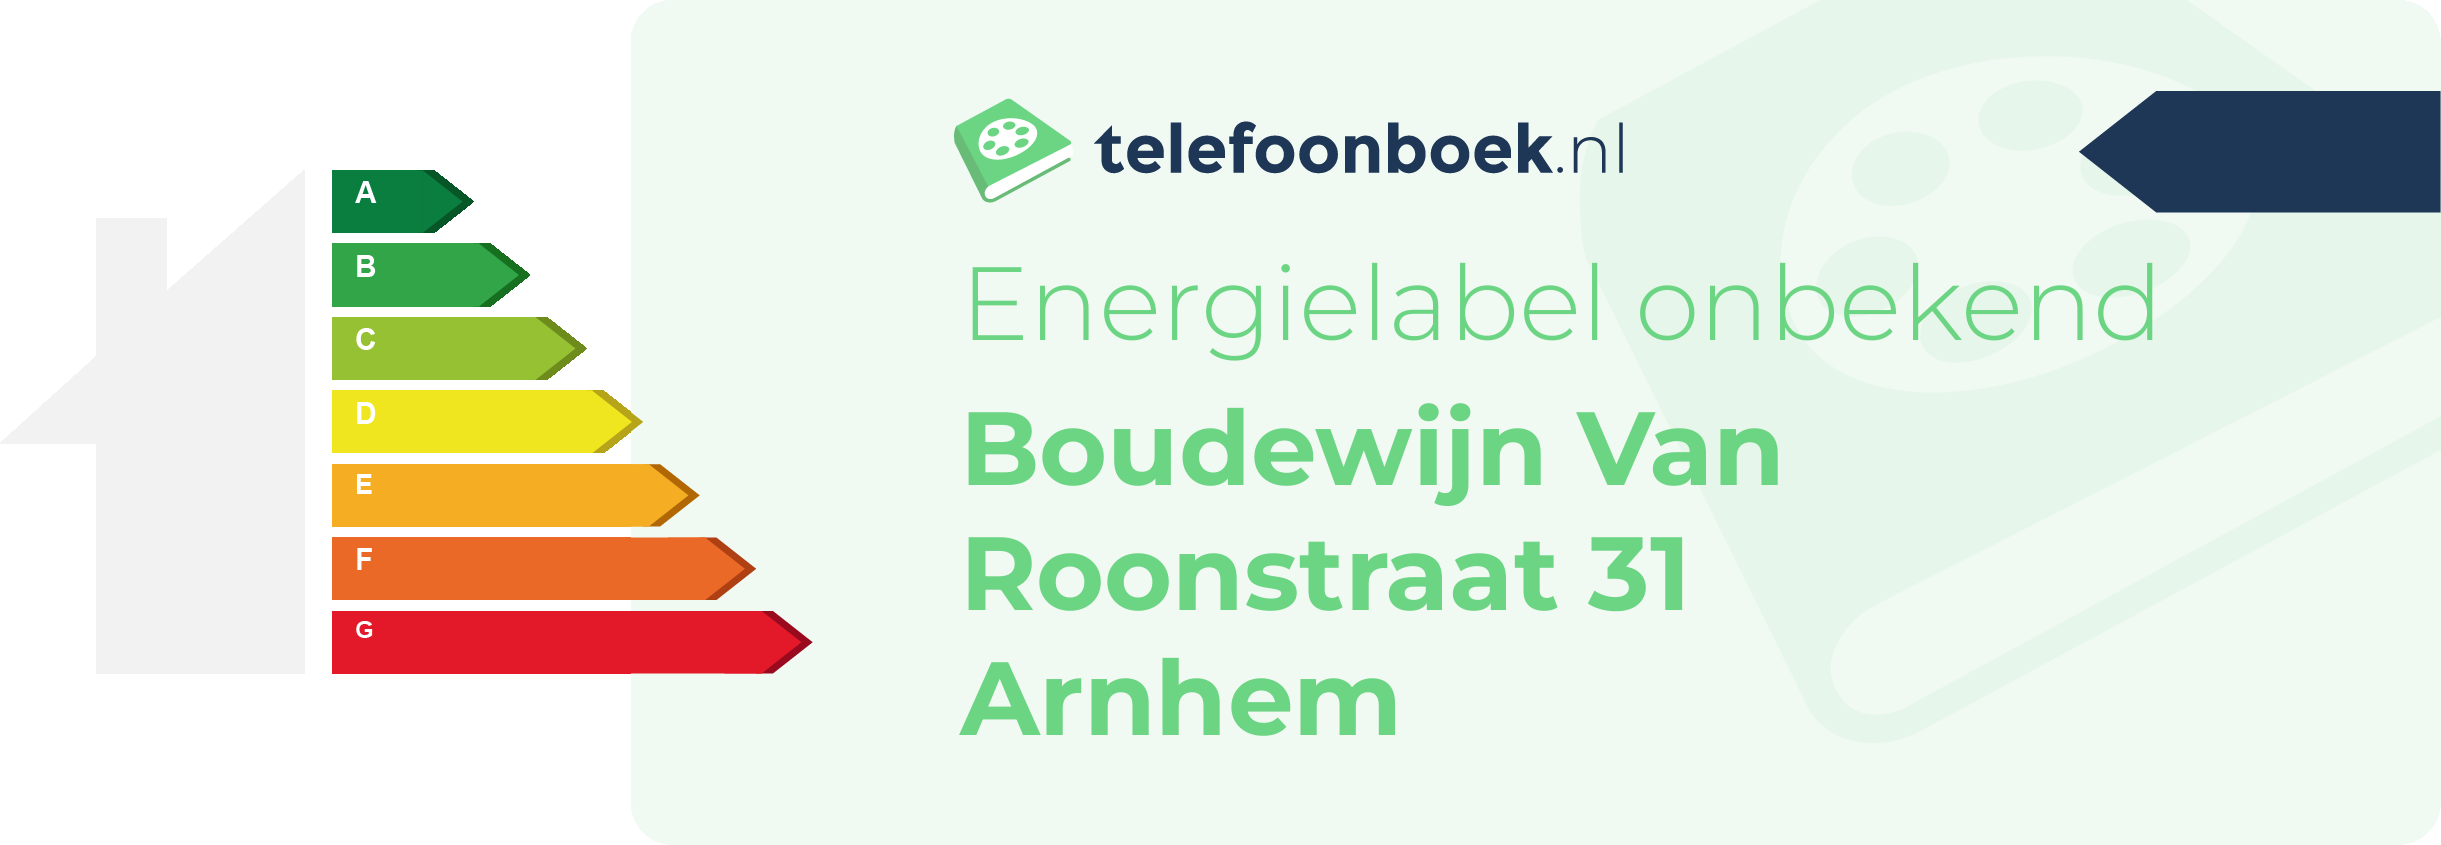 Energielabel Boudewijn Van Roonstraat 31 Arnhem